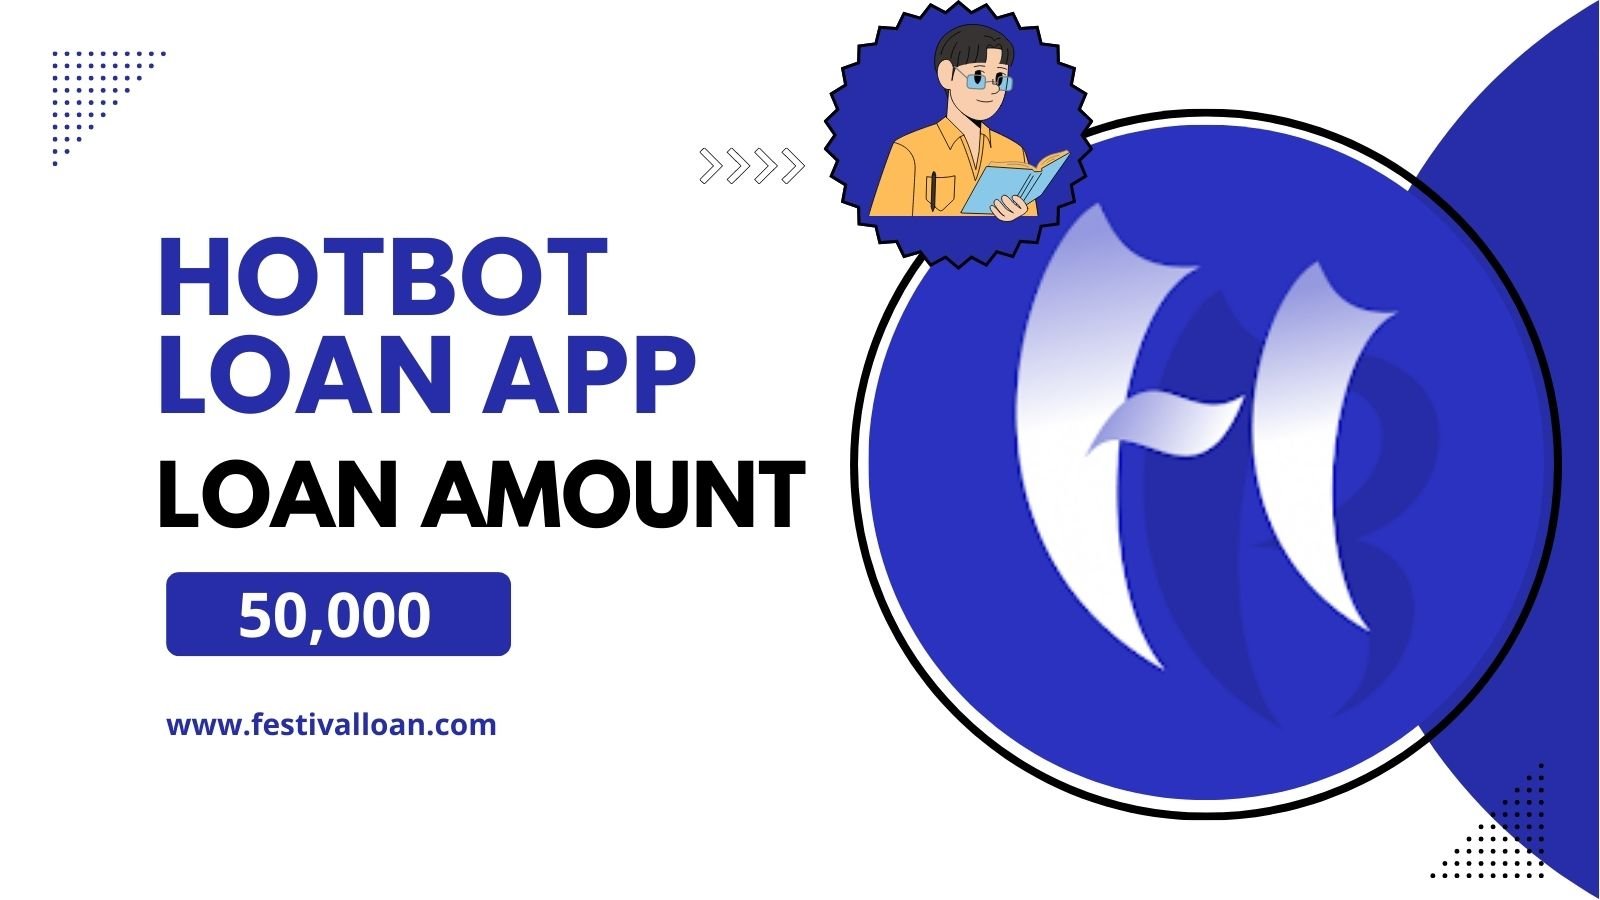 HotBot Loan App से आपको कितना लोन मिलेगा?